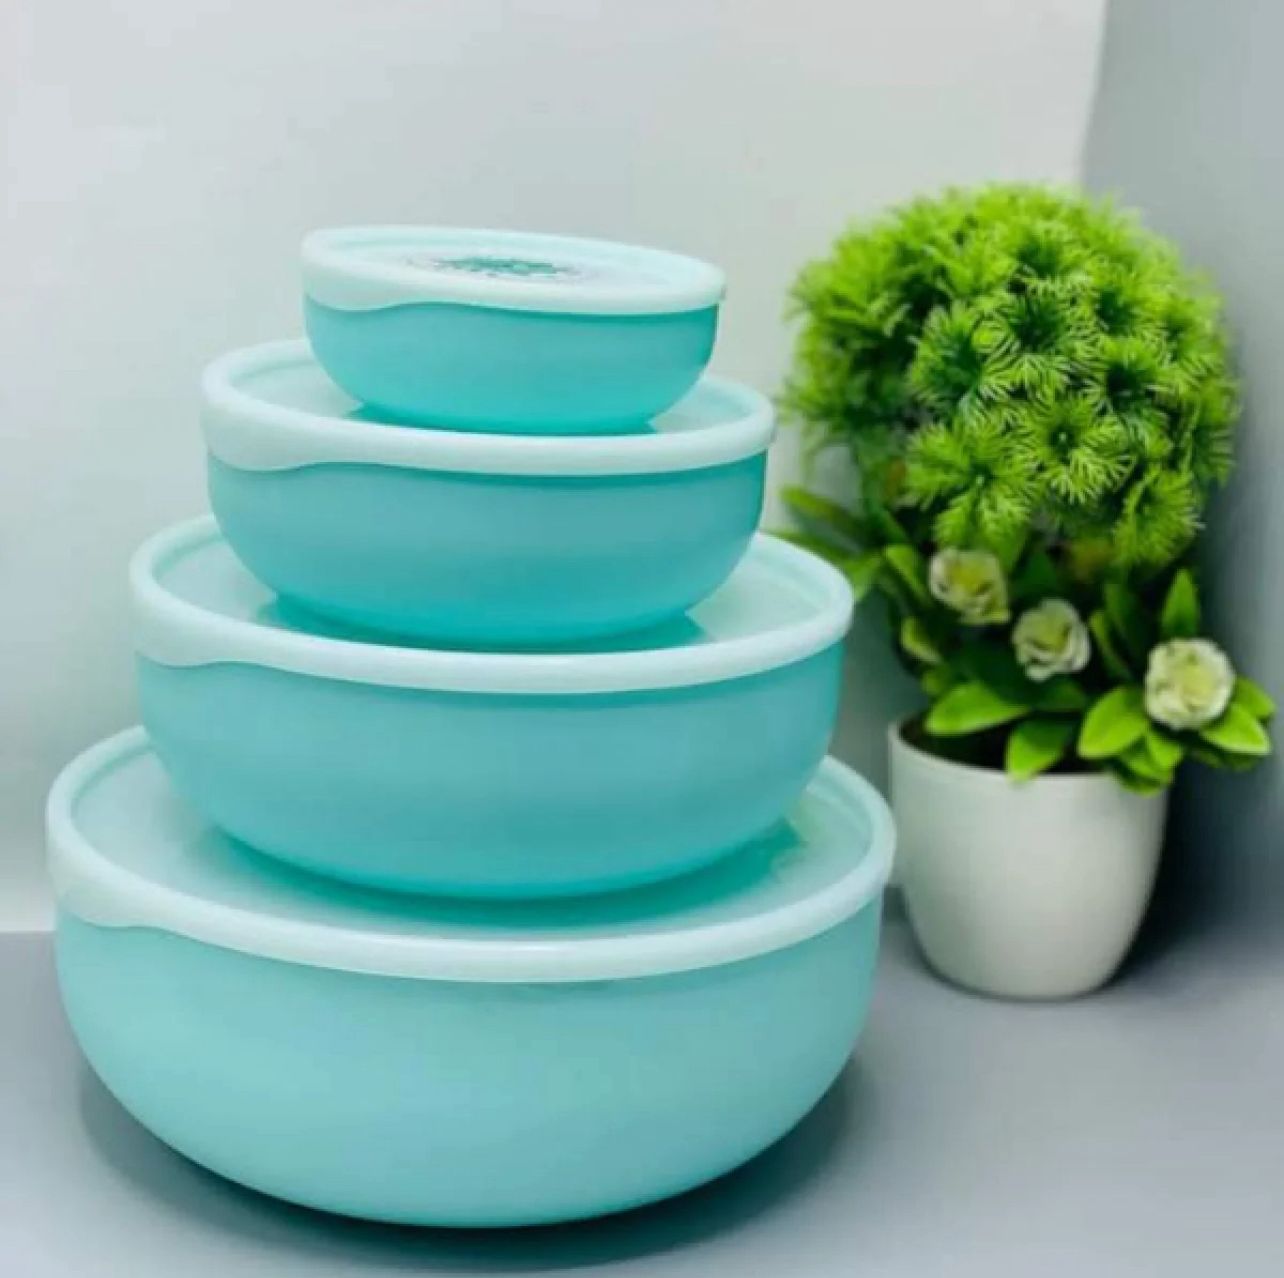 Premium 4 piece bowl set in 3 colors